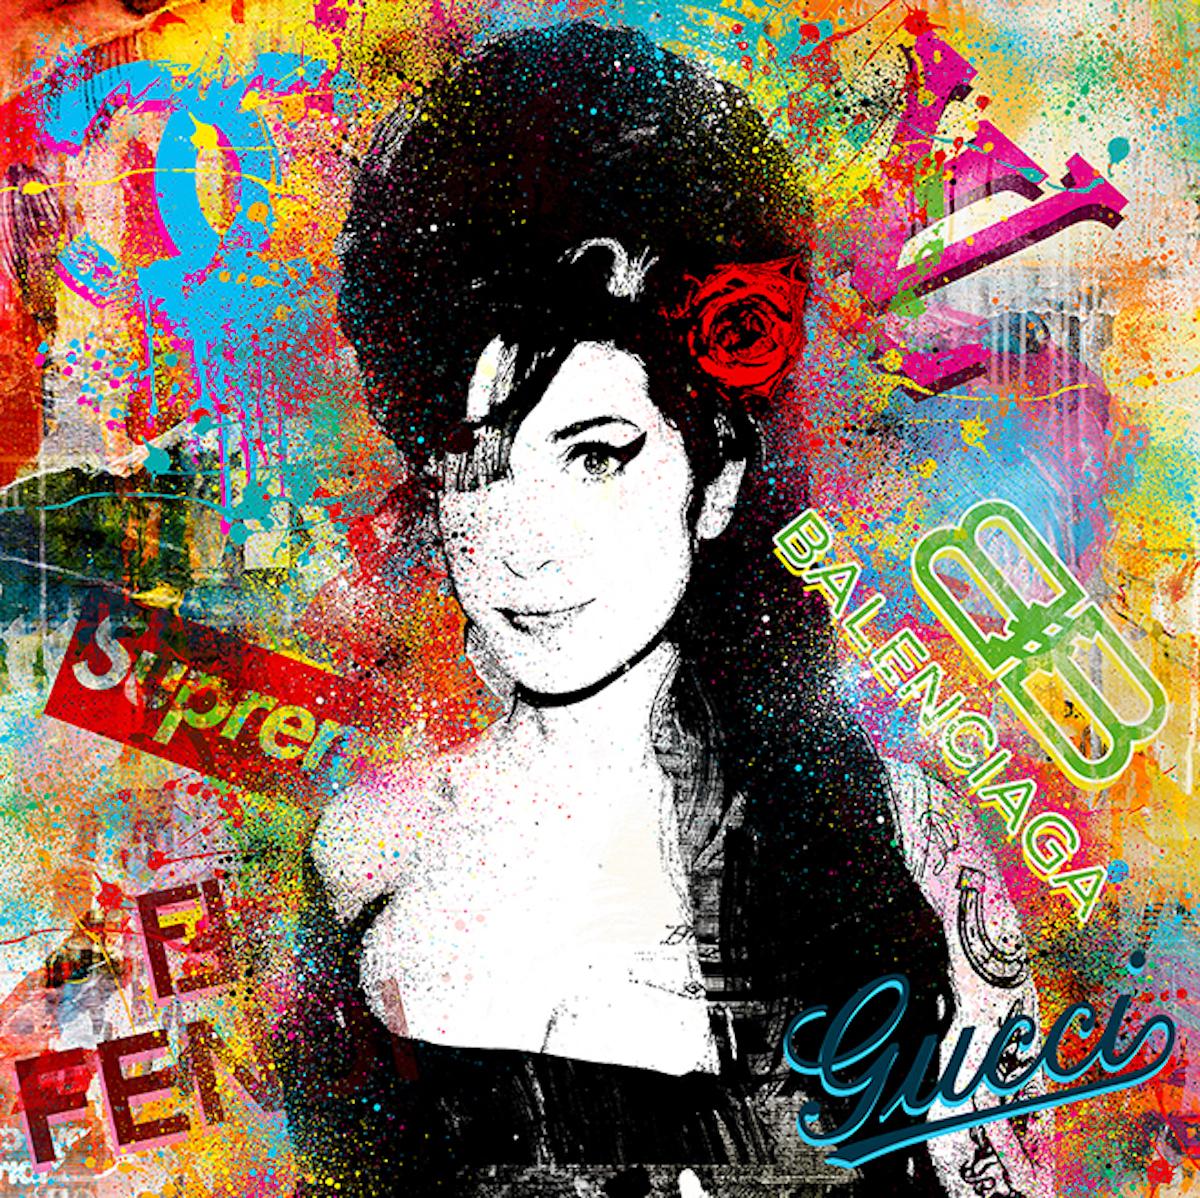 Agent X Portrait Print - (Amy) You Know Love Is, Amy Winehouse Portrait, Famous Celebrity Artwork Pop Art